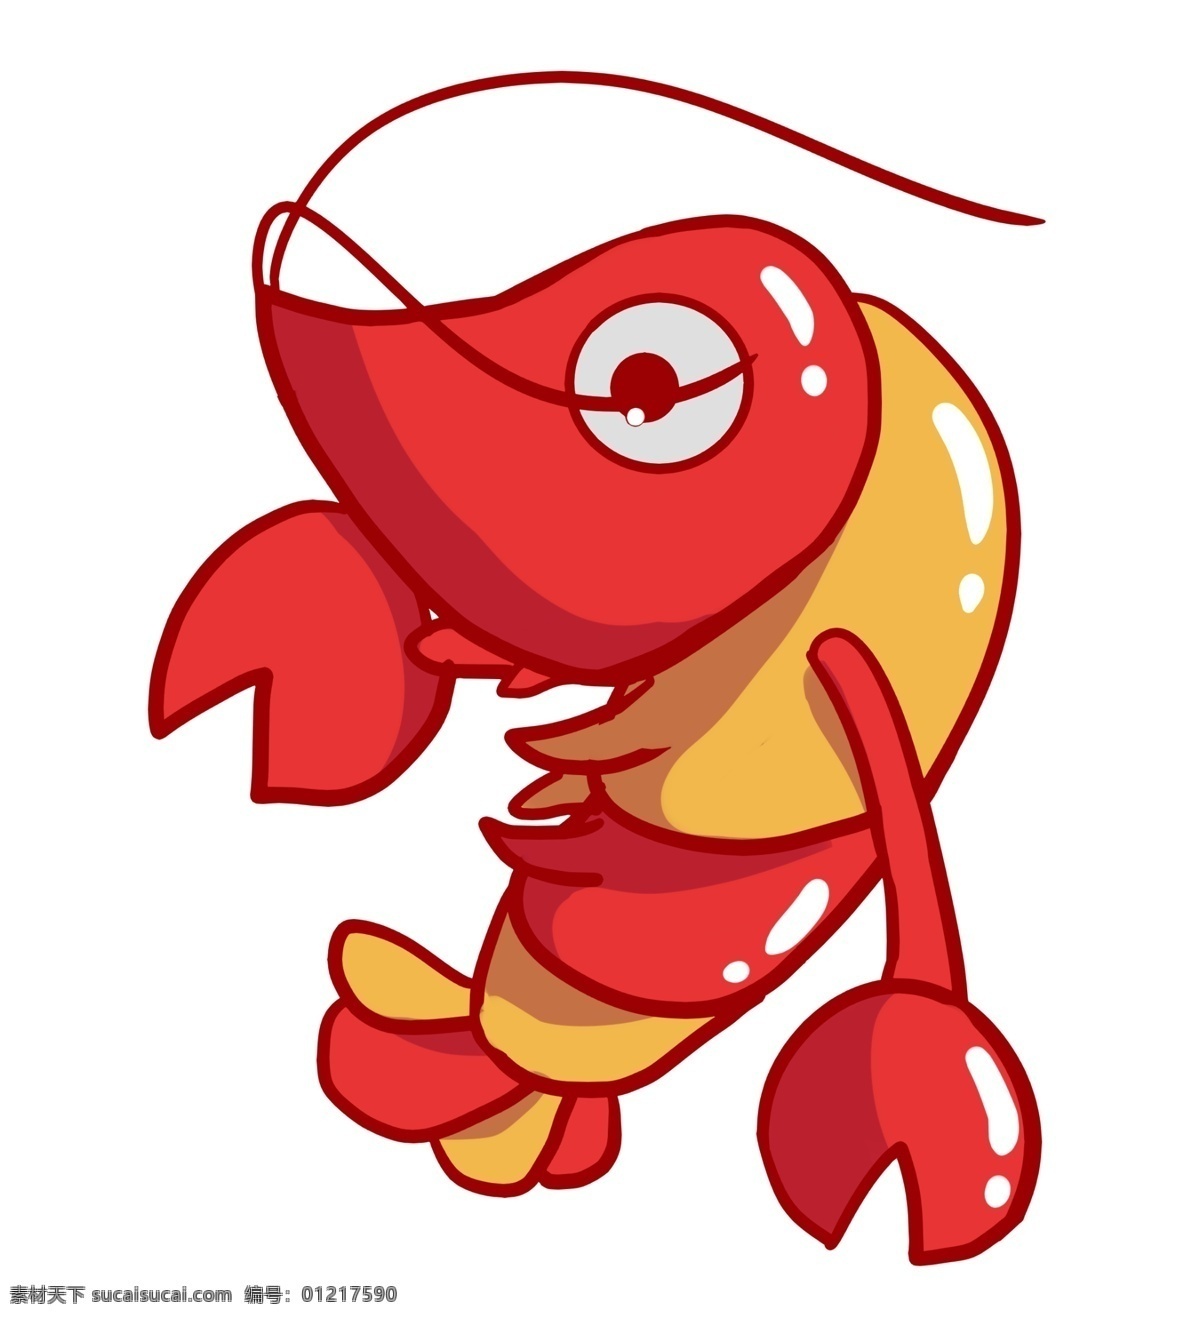 飞舞 龙虾 装饰 插画 飞舞的龙虾 红色的龙虾 漂亮的龙虾 创意龙虾 立体龙虾 卡通龙虾 龙虾插画